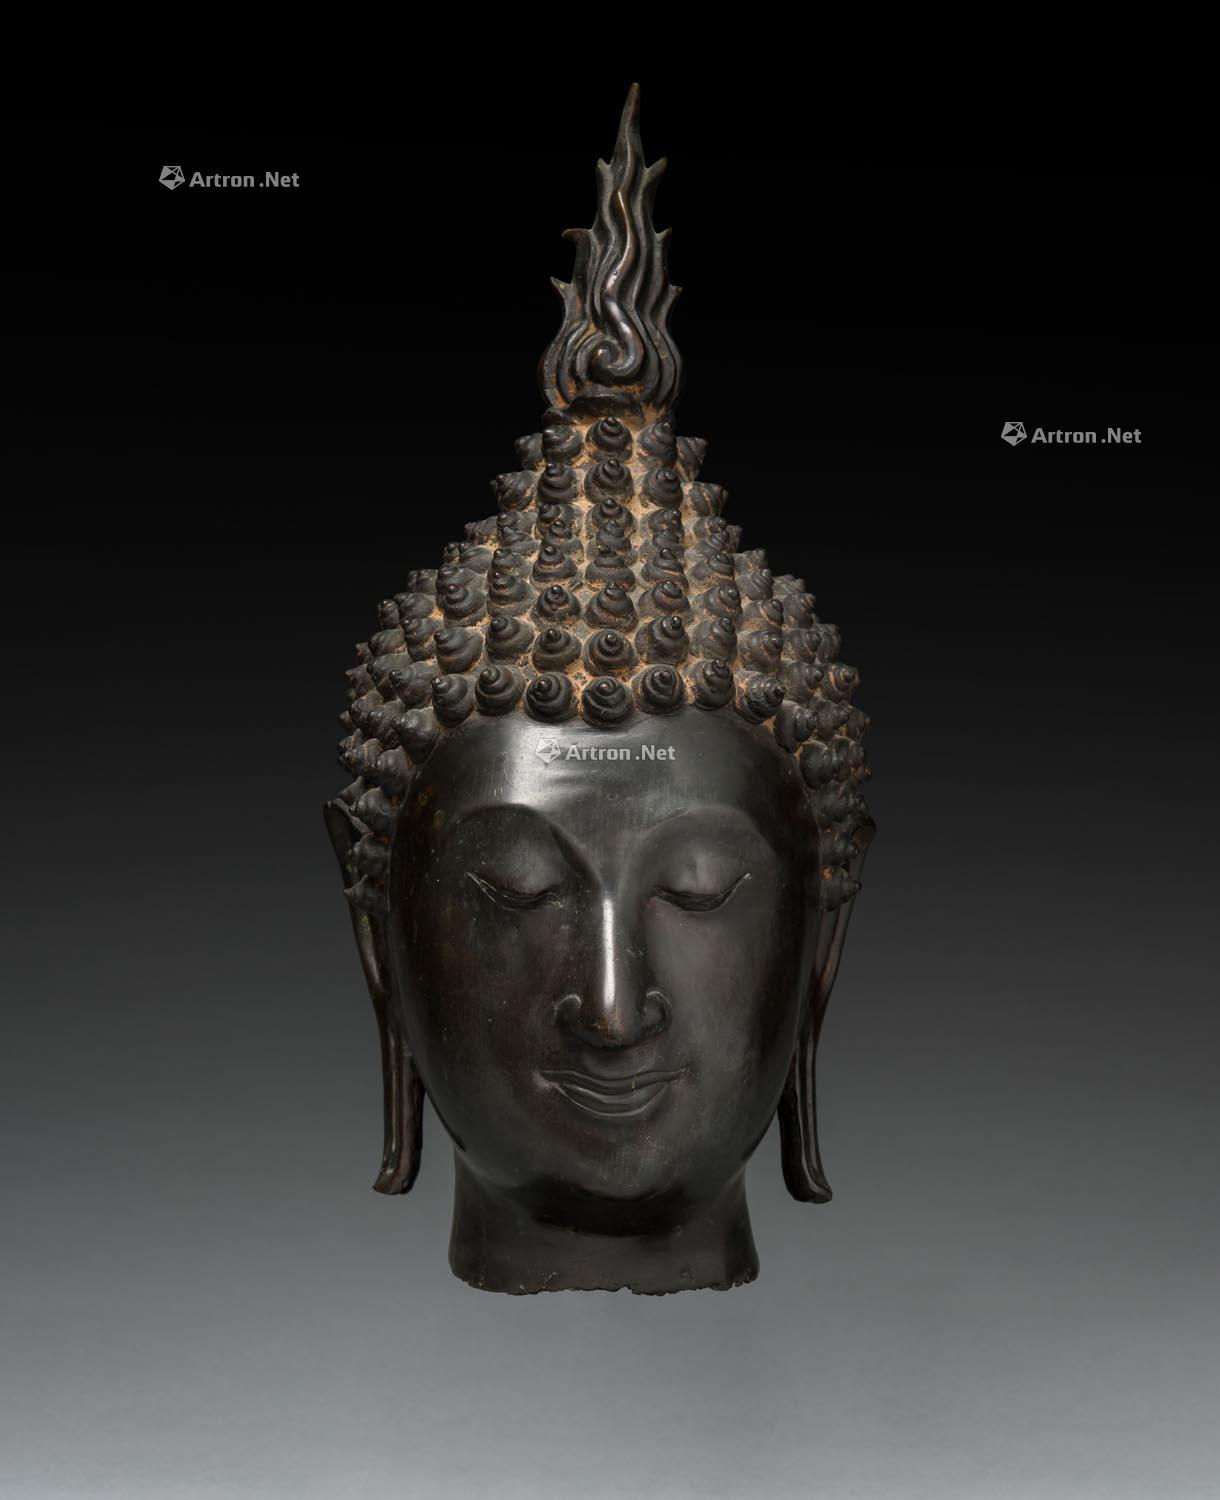 21世纪泰国素可泰铜制佛头像 拍卖品 图片 价格 鉴赏 佛教文物其它 雅昌艺术品拍卖网